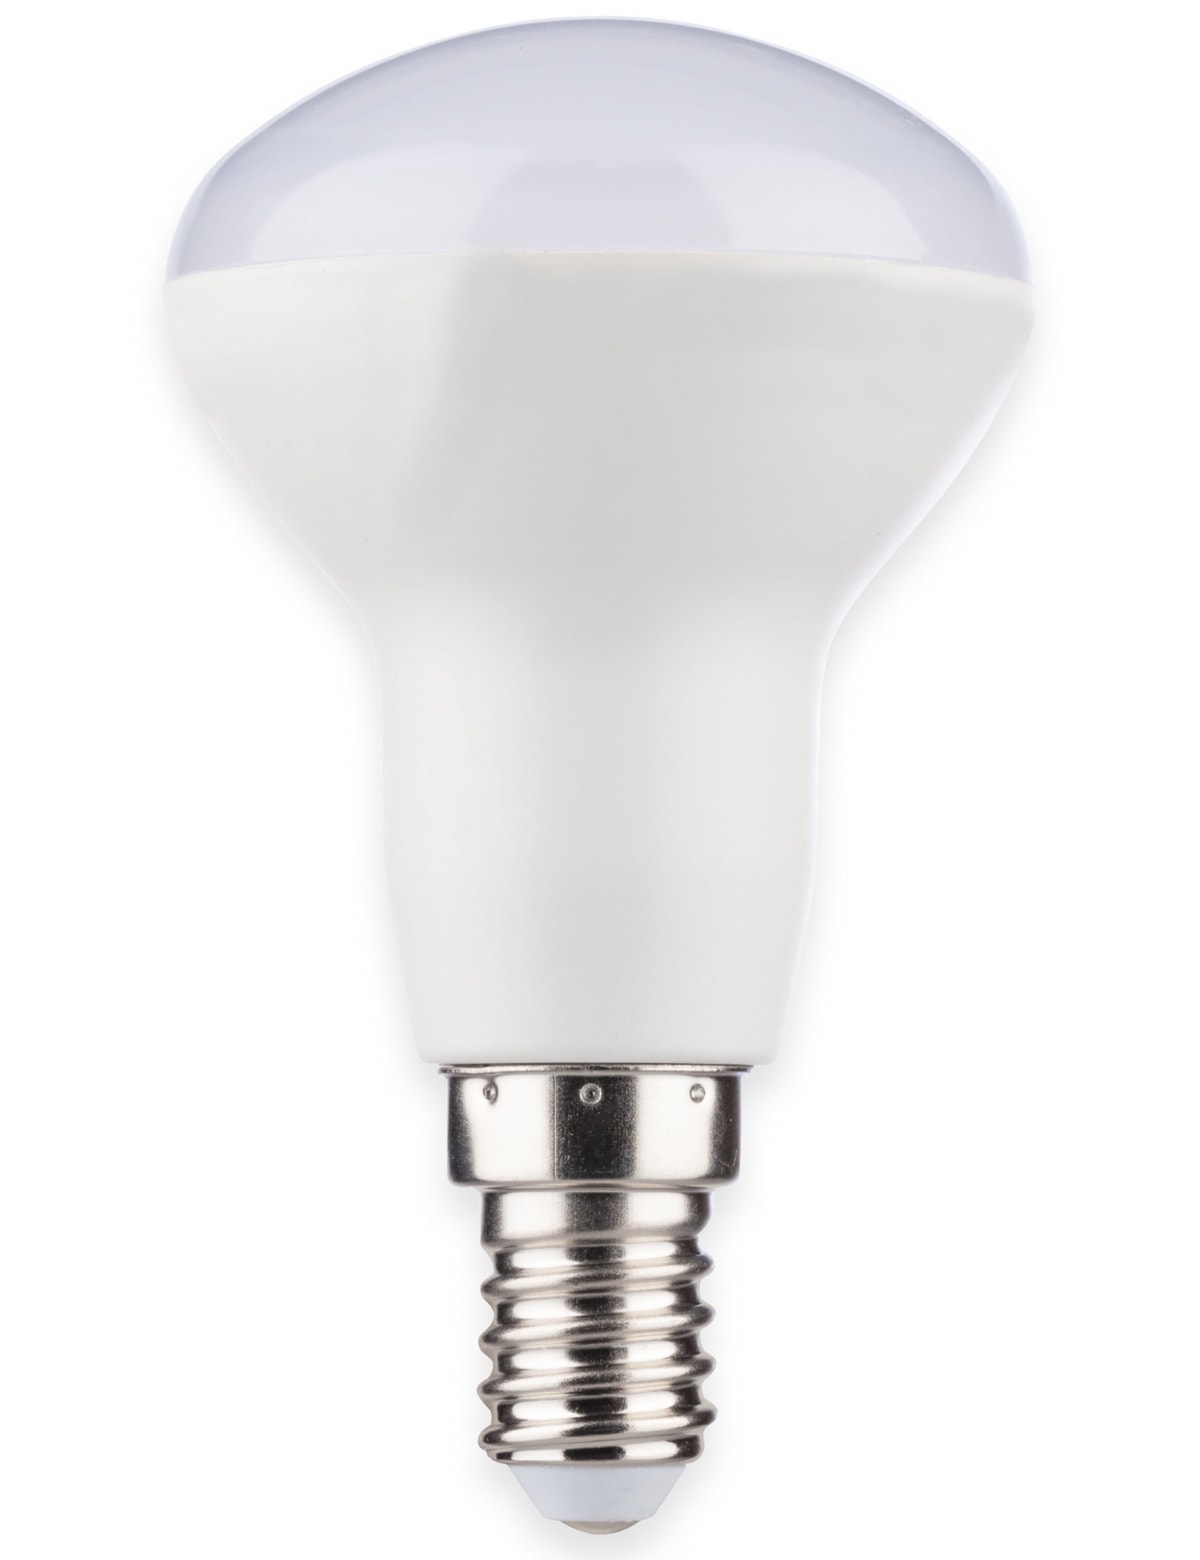 MÜLLER-LICHT LED-Lampe, Reflektorform, 400388, EEK:G, R50, E14, 6W, matt